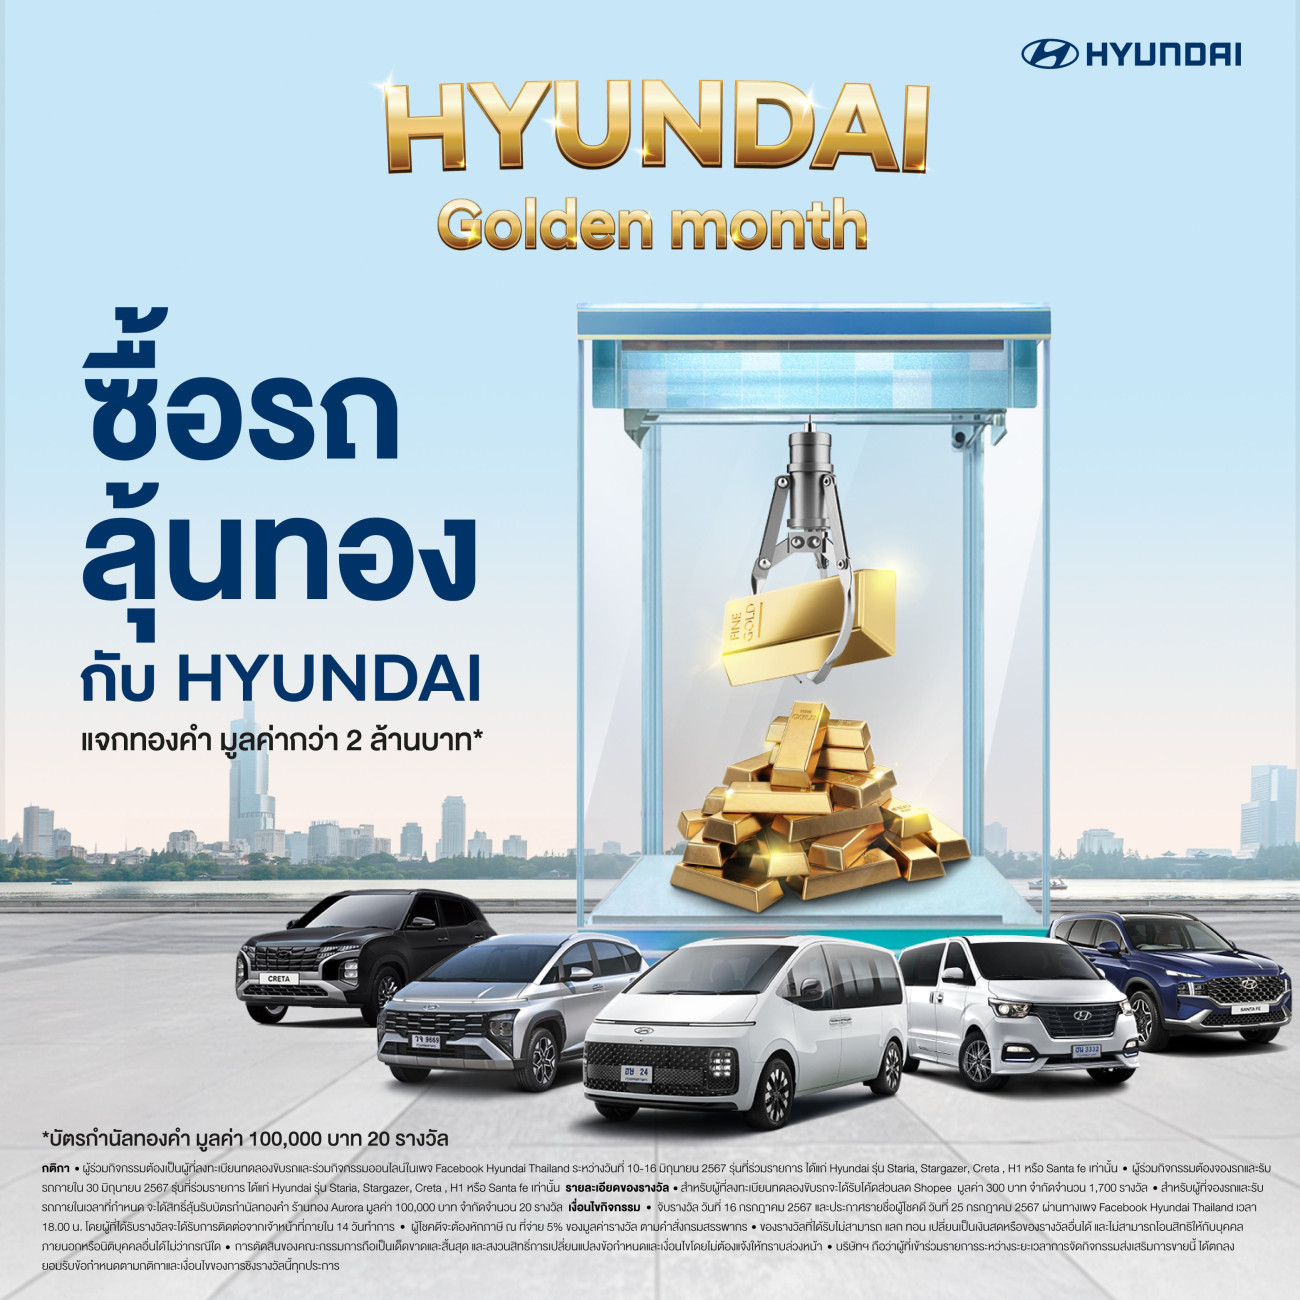 Hyundai Golden Month แจกรางวัลกว่า 2 ล้านบาท เพียงทดลองขับรับคูปองส่วนลด และ ลุ้นรับทองเมื่อออกรถฮุนได